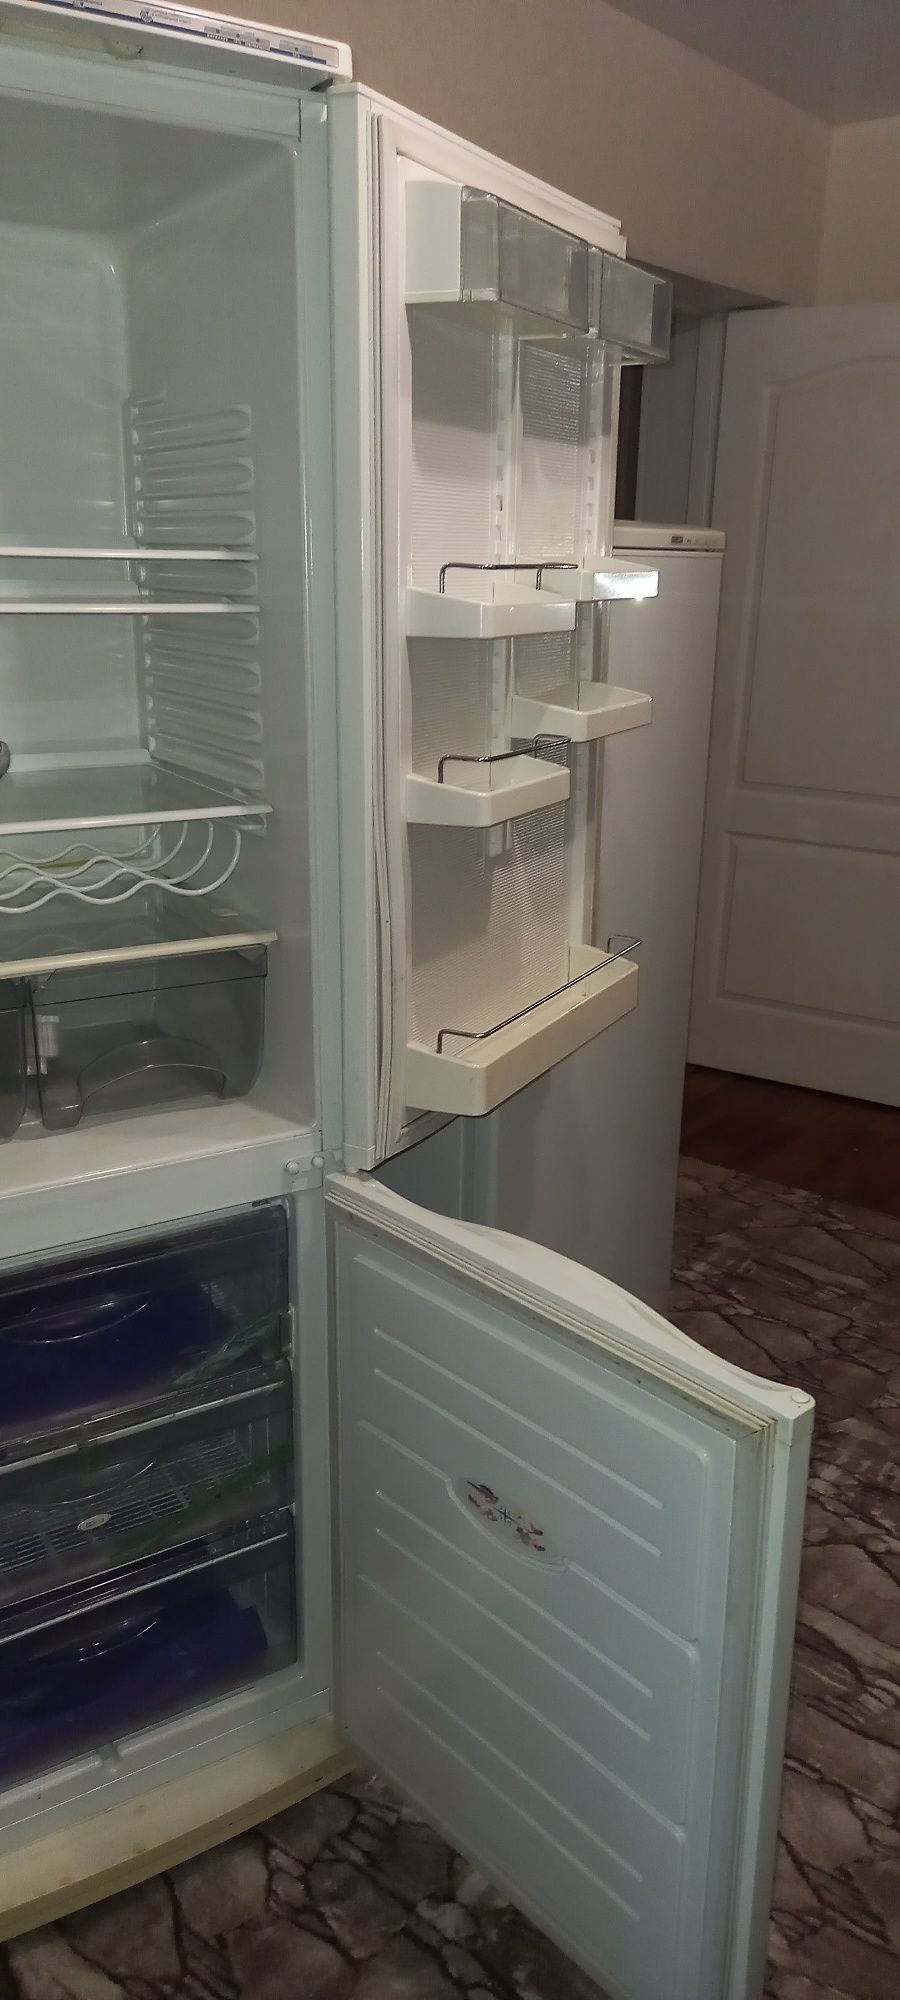 Холодильник Атлант 6021